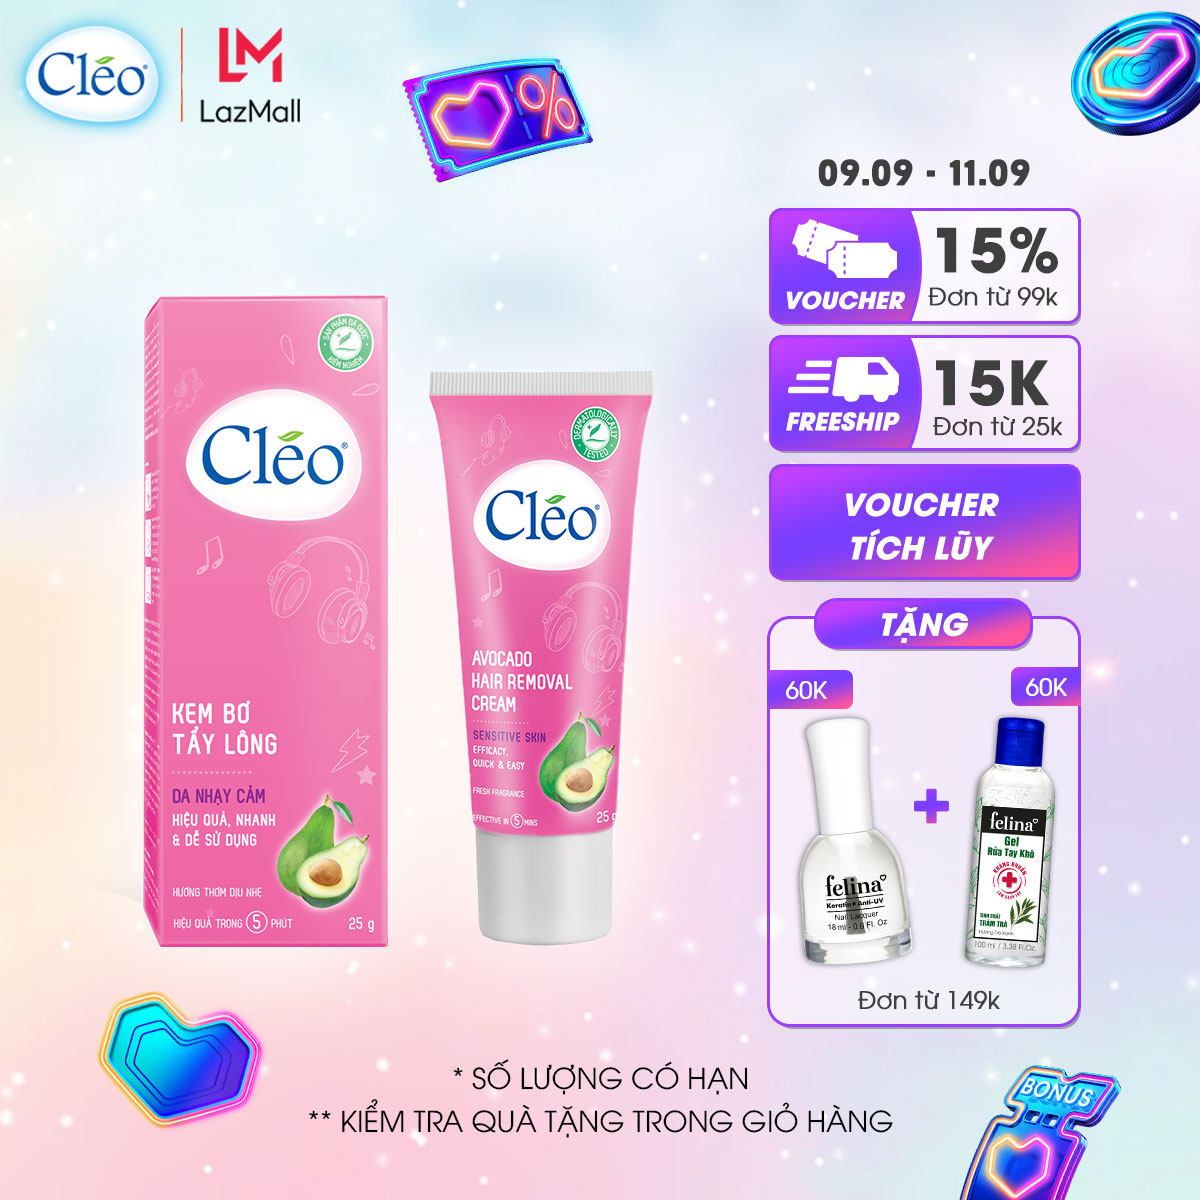 Kem tẩy lông chiết xuất bơ Cleo dành cho da nhạy cảm 25g, an toàn